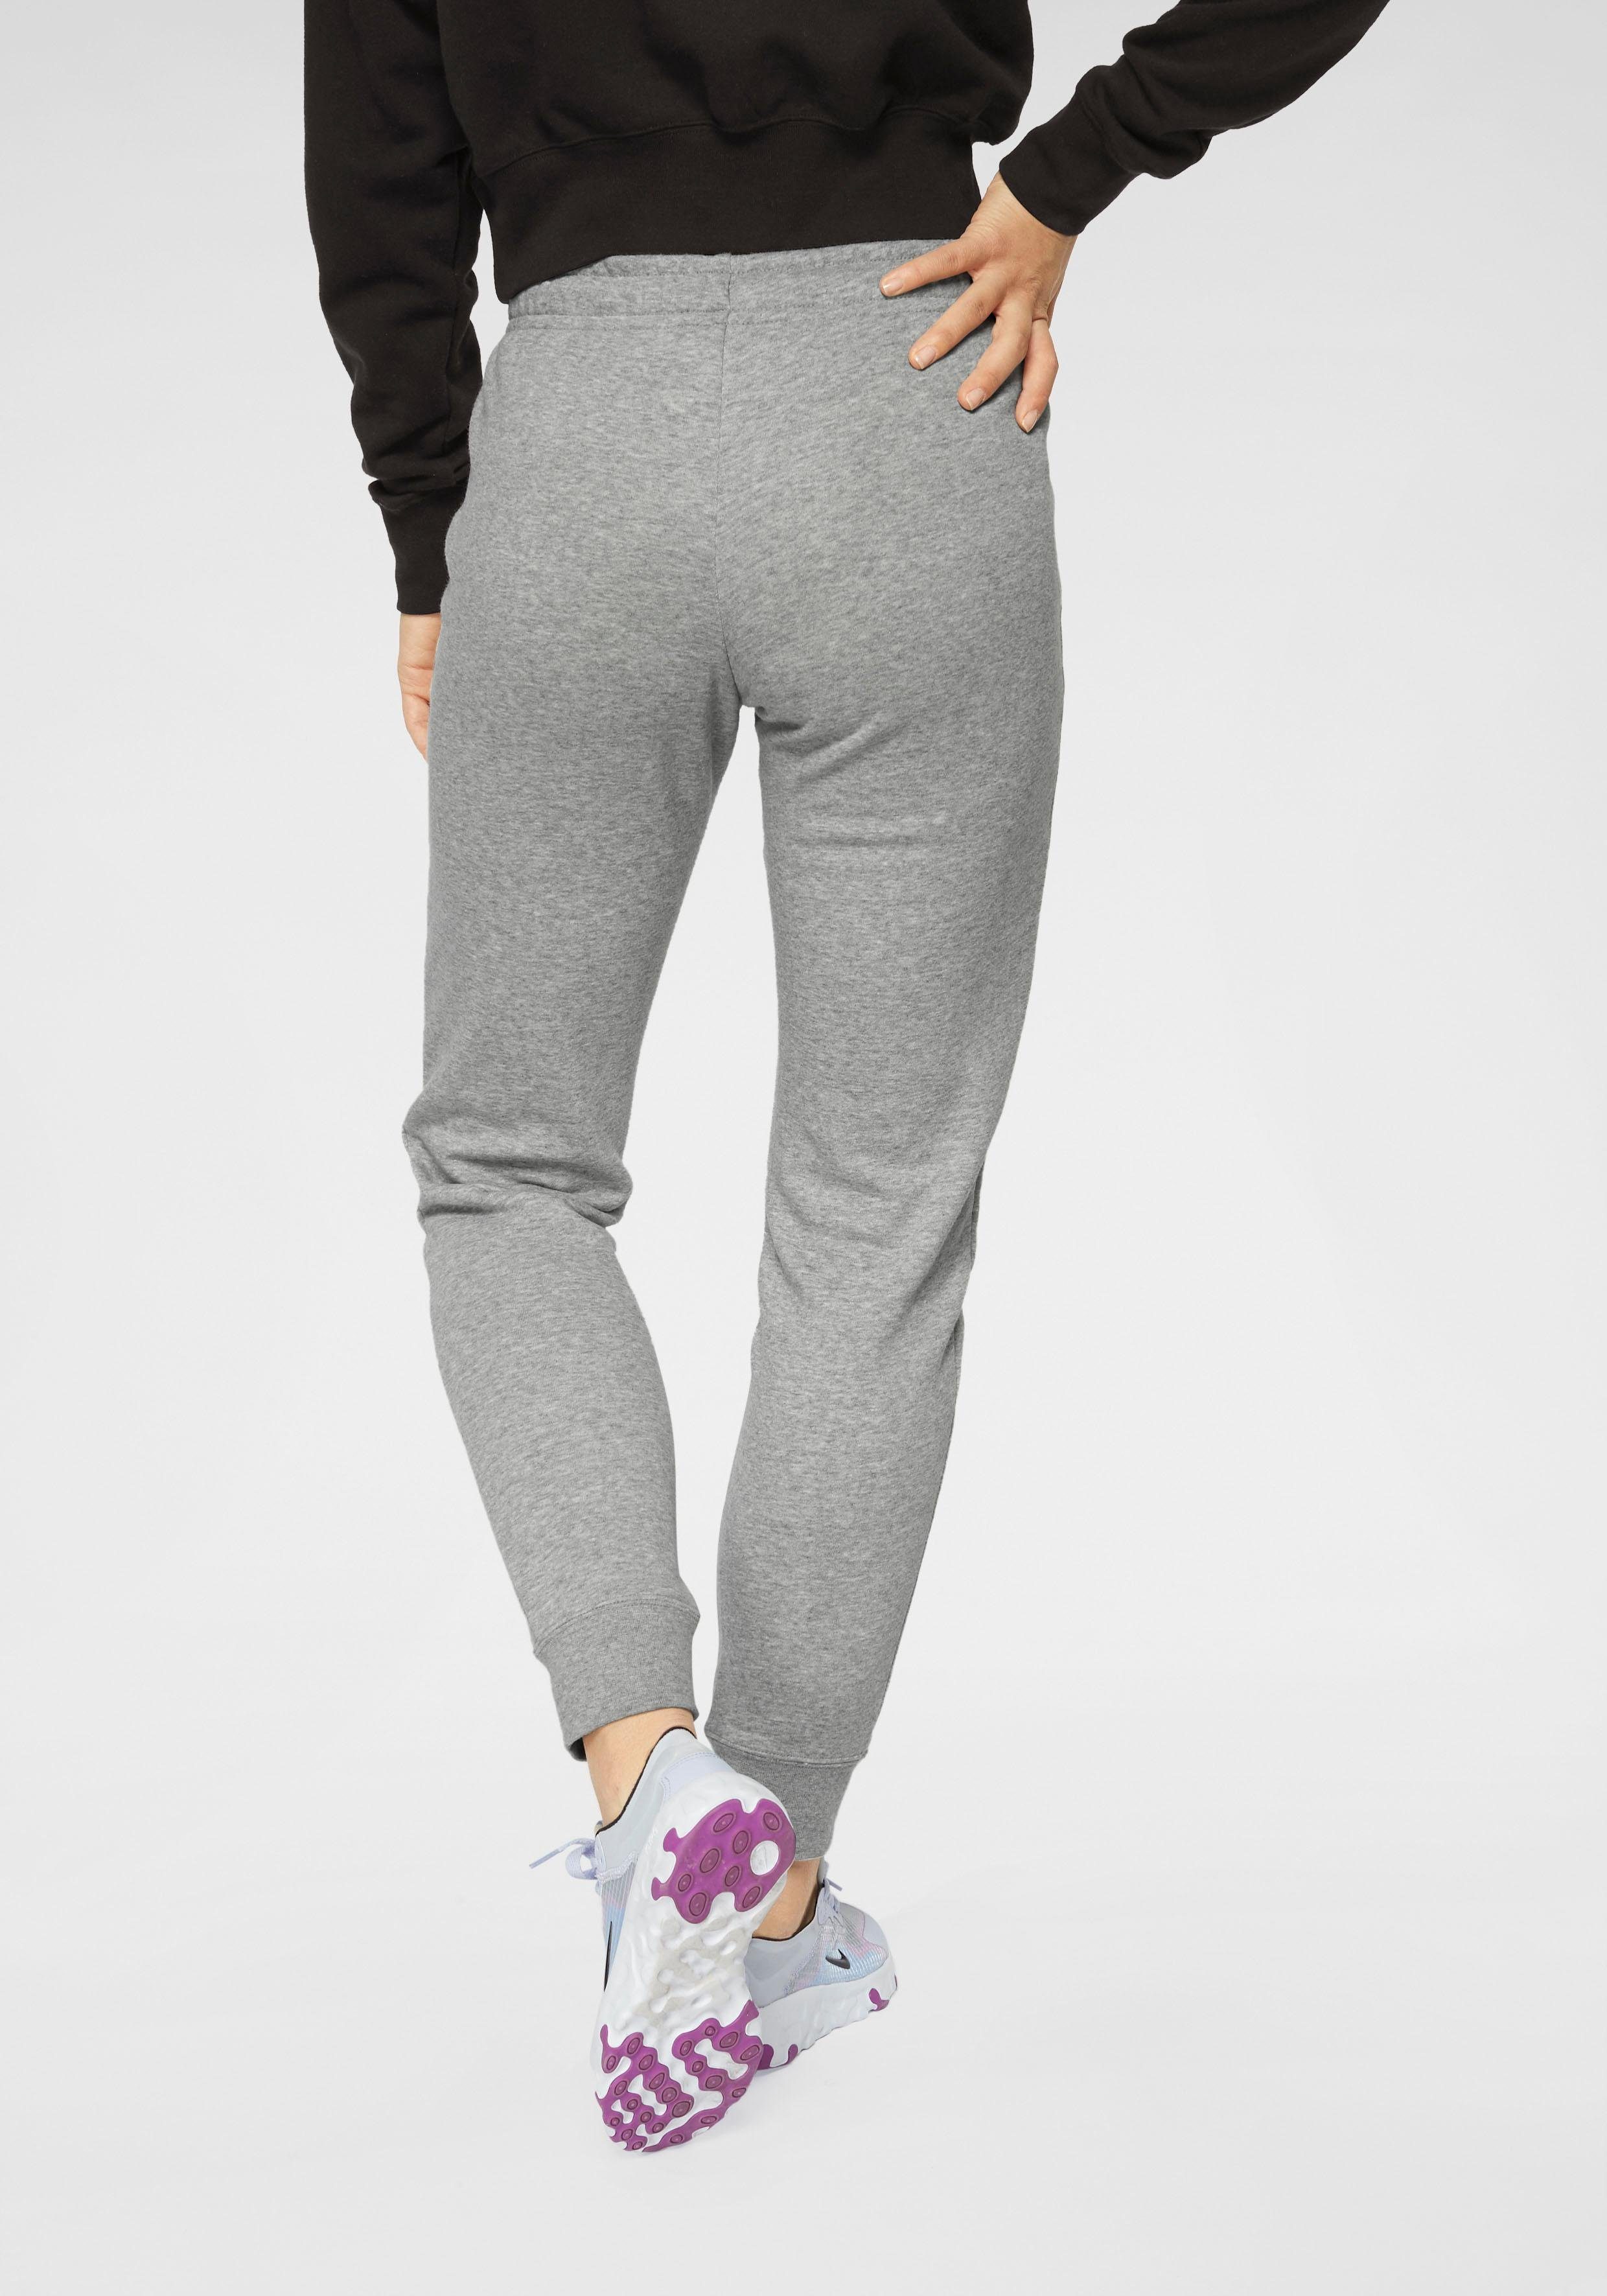 FLEECE hellgrau-meliert PANT Jogginghose Sportswear Nike WOMENS ESSENTIAL MID-RISE